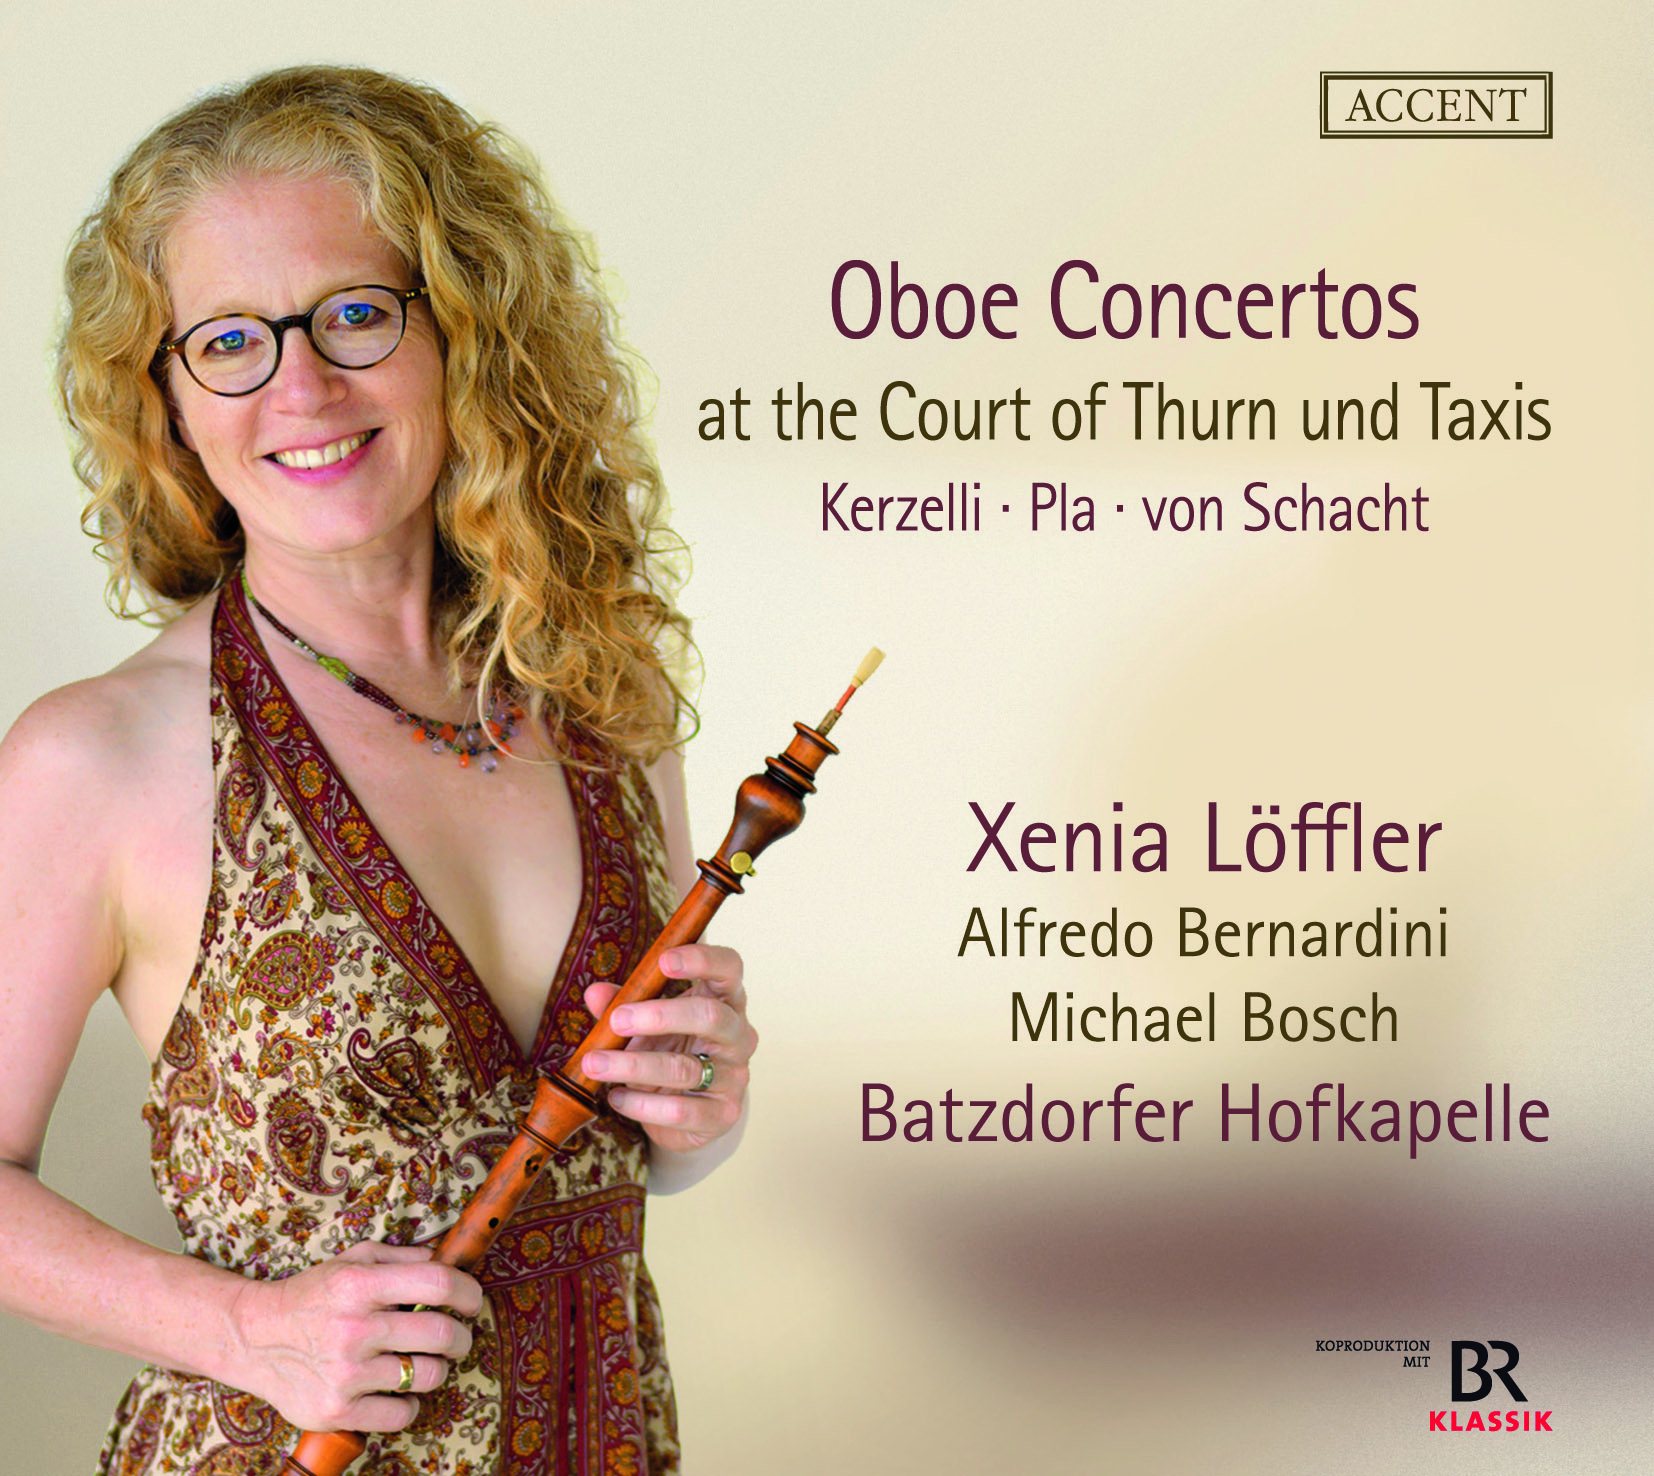 Oboe Contertos